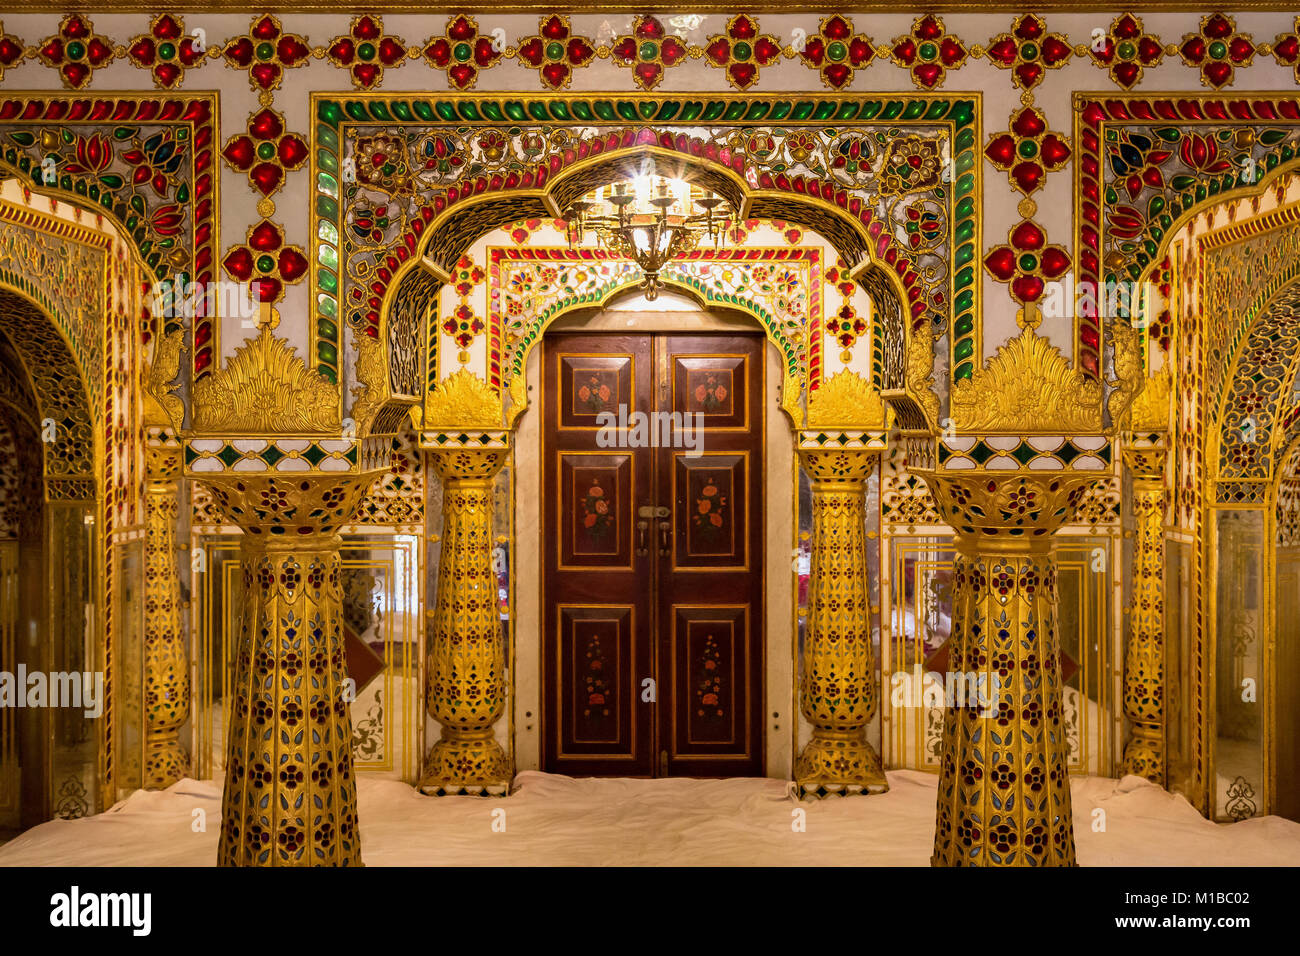 City Palace Jaipur Rajasthan - Palazzo reale architettura della camera interna con oro intricati lavori artistici in vetro . Storico complesso residenziale di maharajahs. Foto Stock